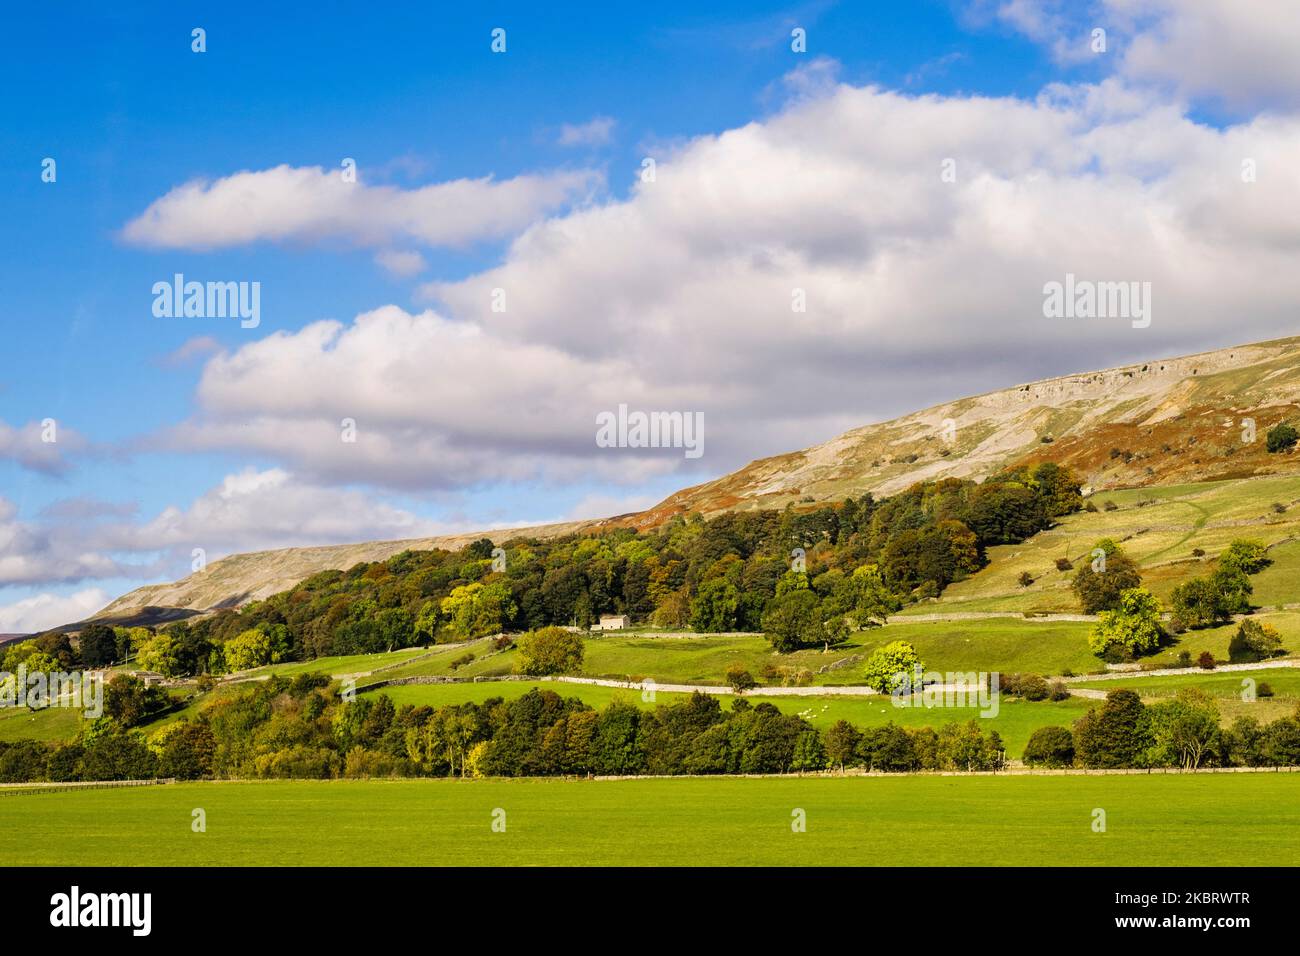 Campagne anglaise au-dessous d'un escarpement dans le parc national de Yorkshire Dales. Reeth, Richmond, Swaledale, Yorkshire du Nord, Angleterre, Royaume-Uni, Grande-Bretagne Banque D'Images